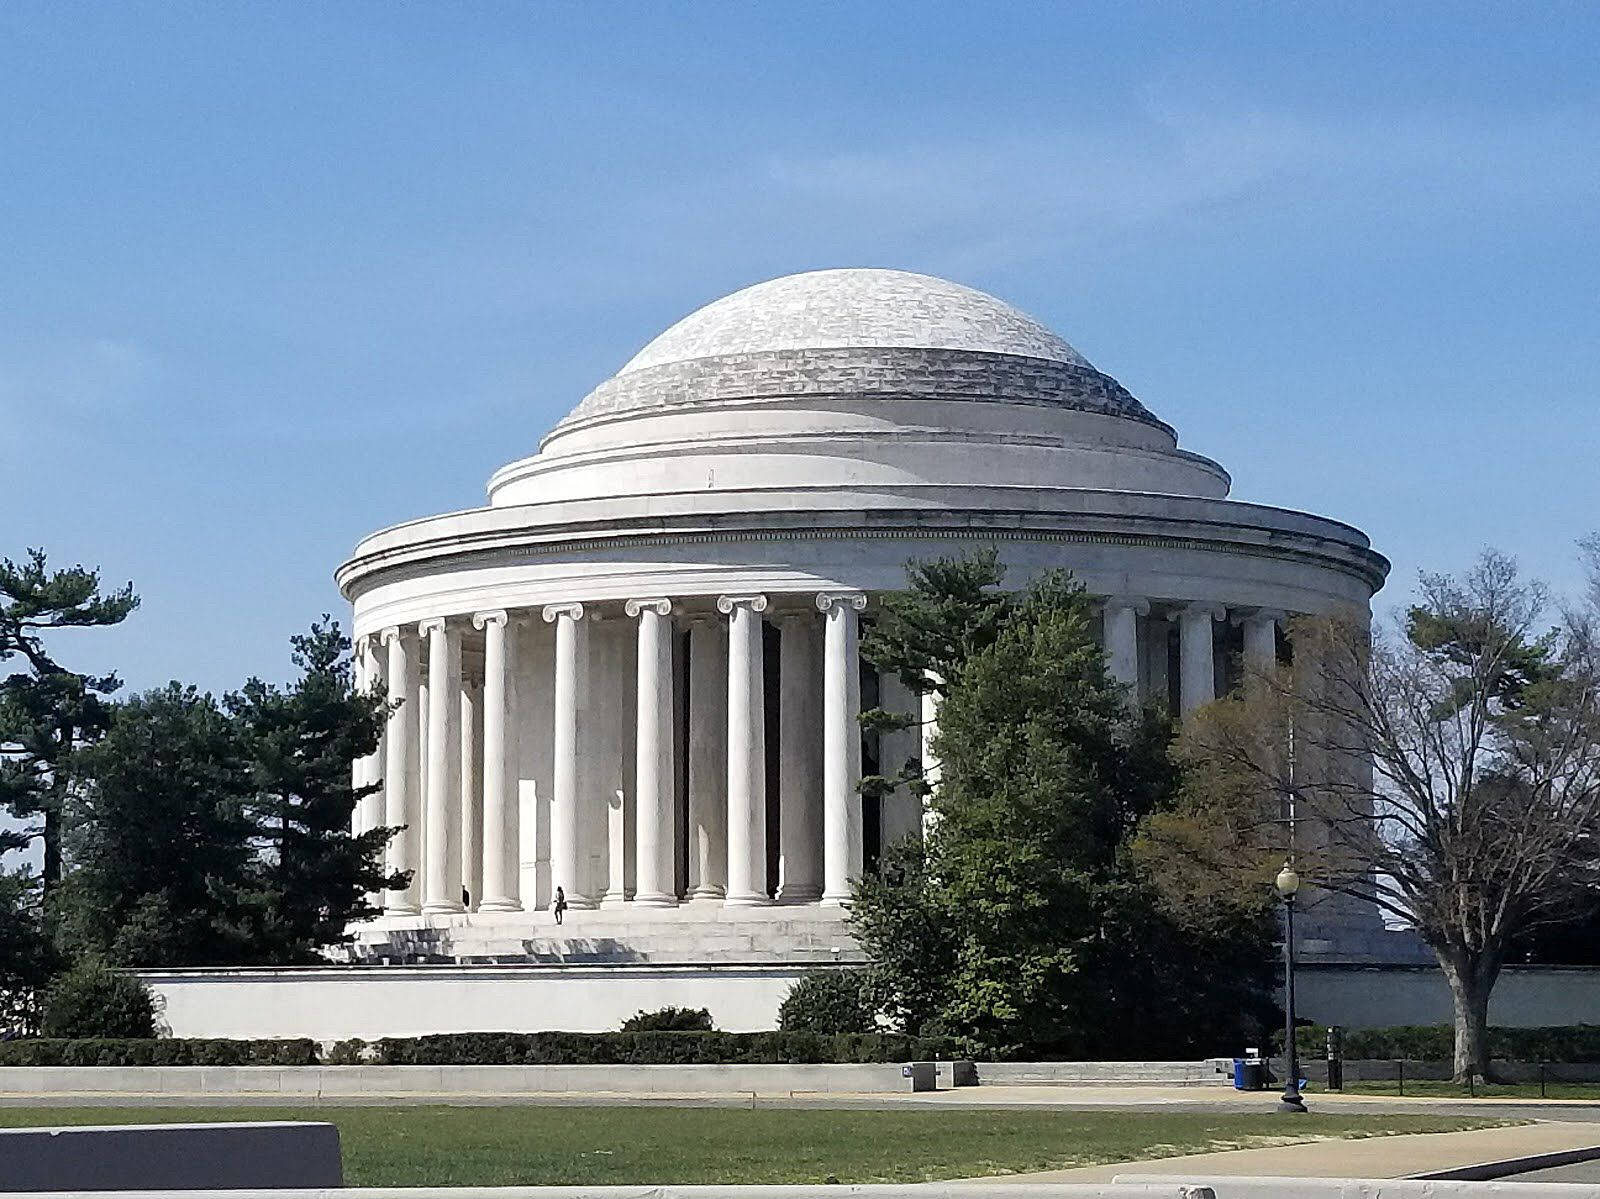 Jeffersonmemorial An Einem Klaren Tag Wallpaper